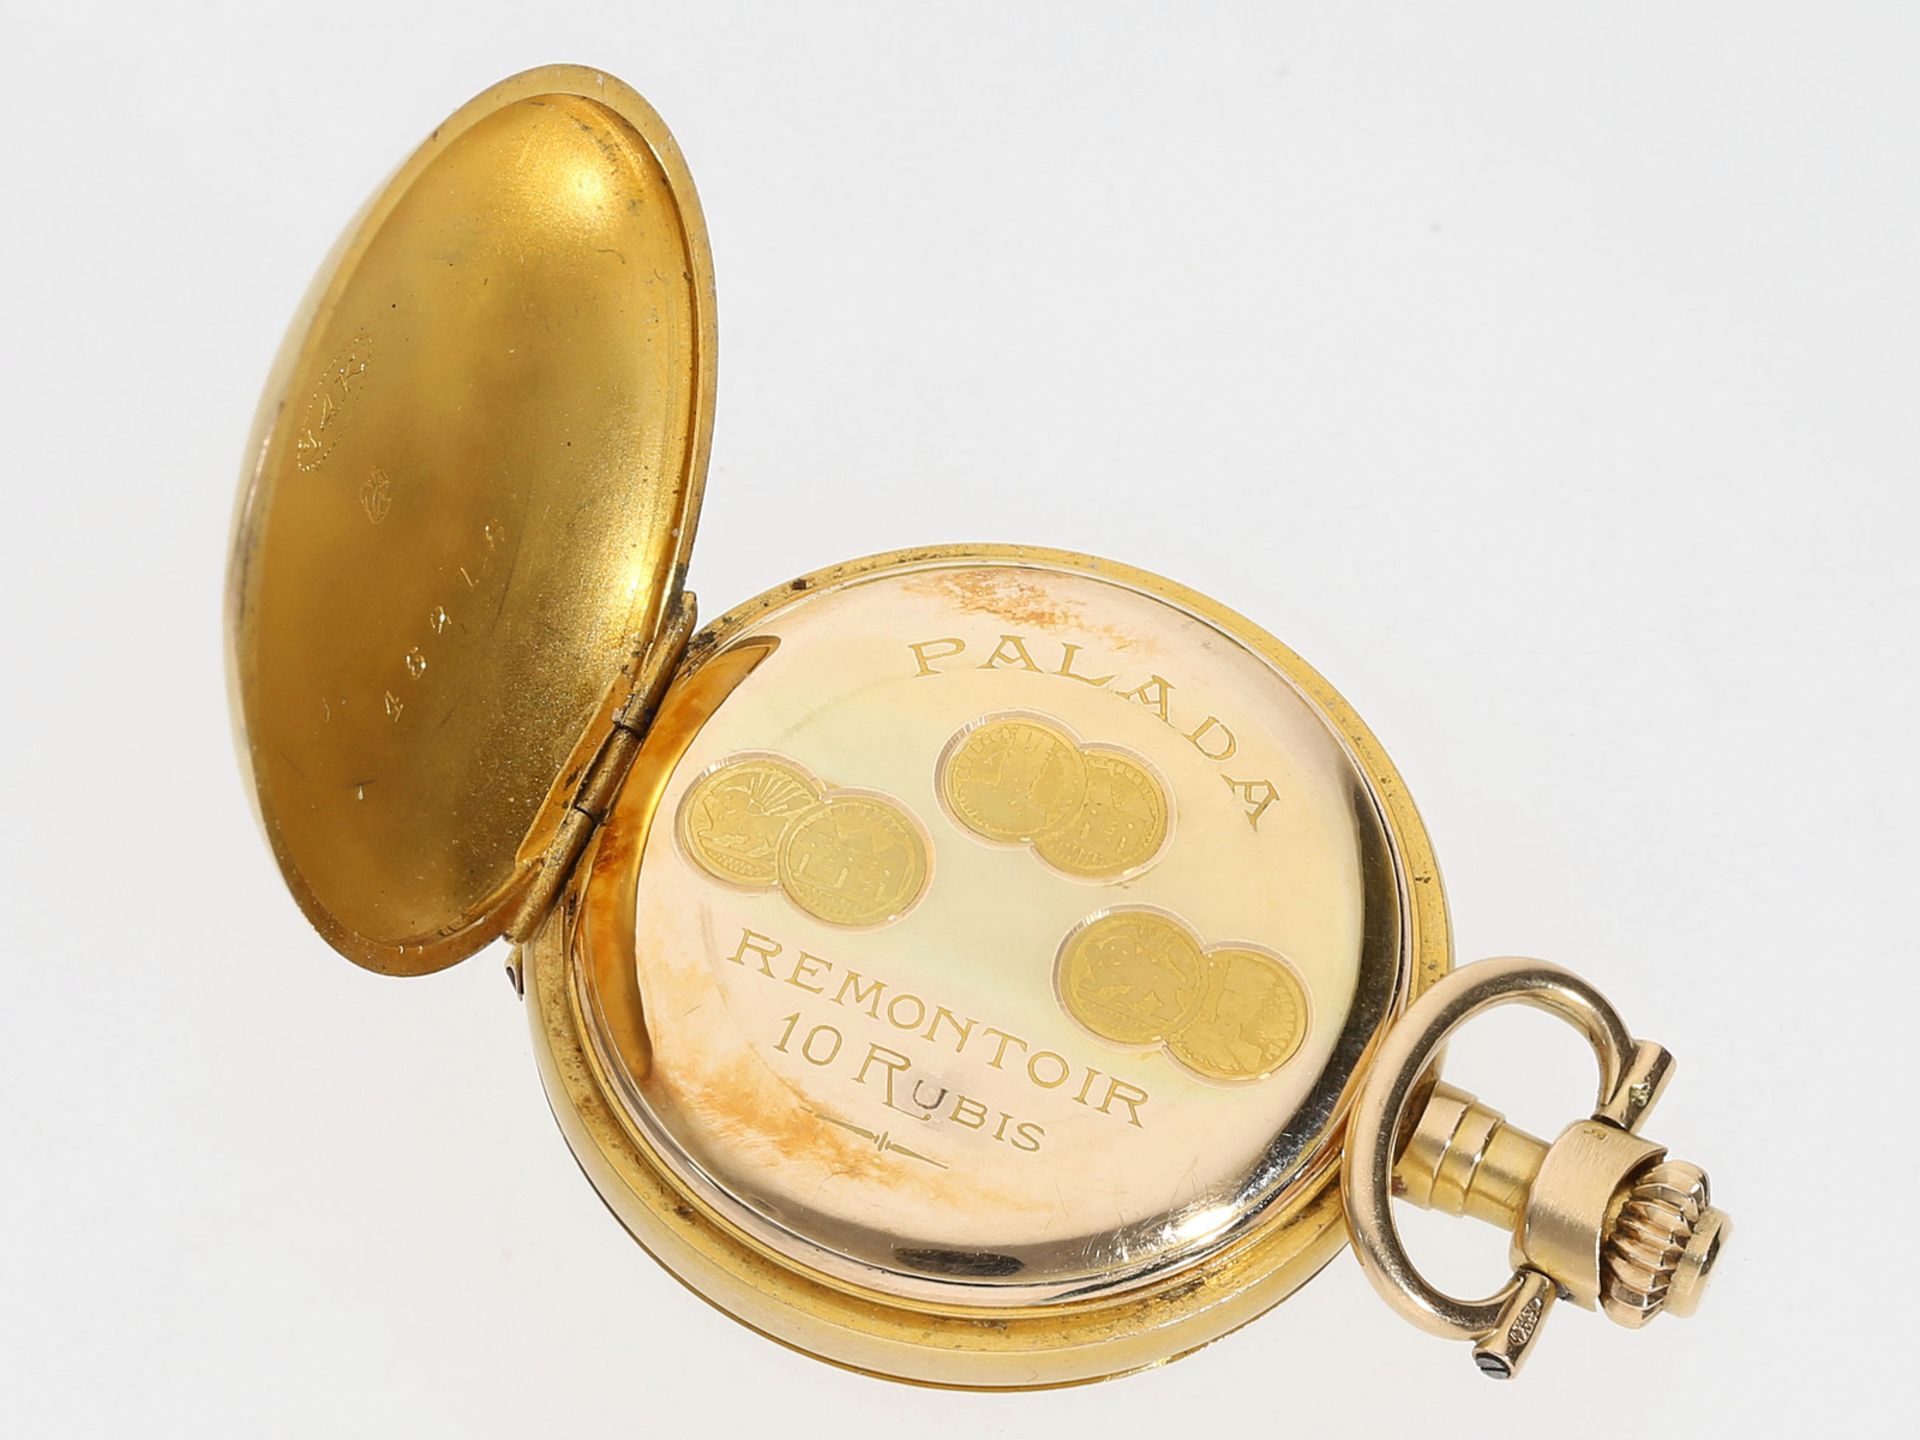 Taschenuhr/Anhängeuhr: Gold/Emaille-Damenuhr mit Diamantbesatz, Jugendstil um 1900 - Bild 3 aus 4